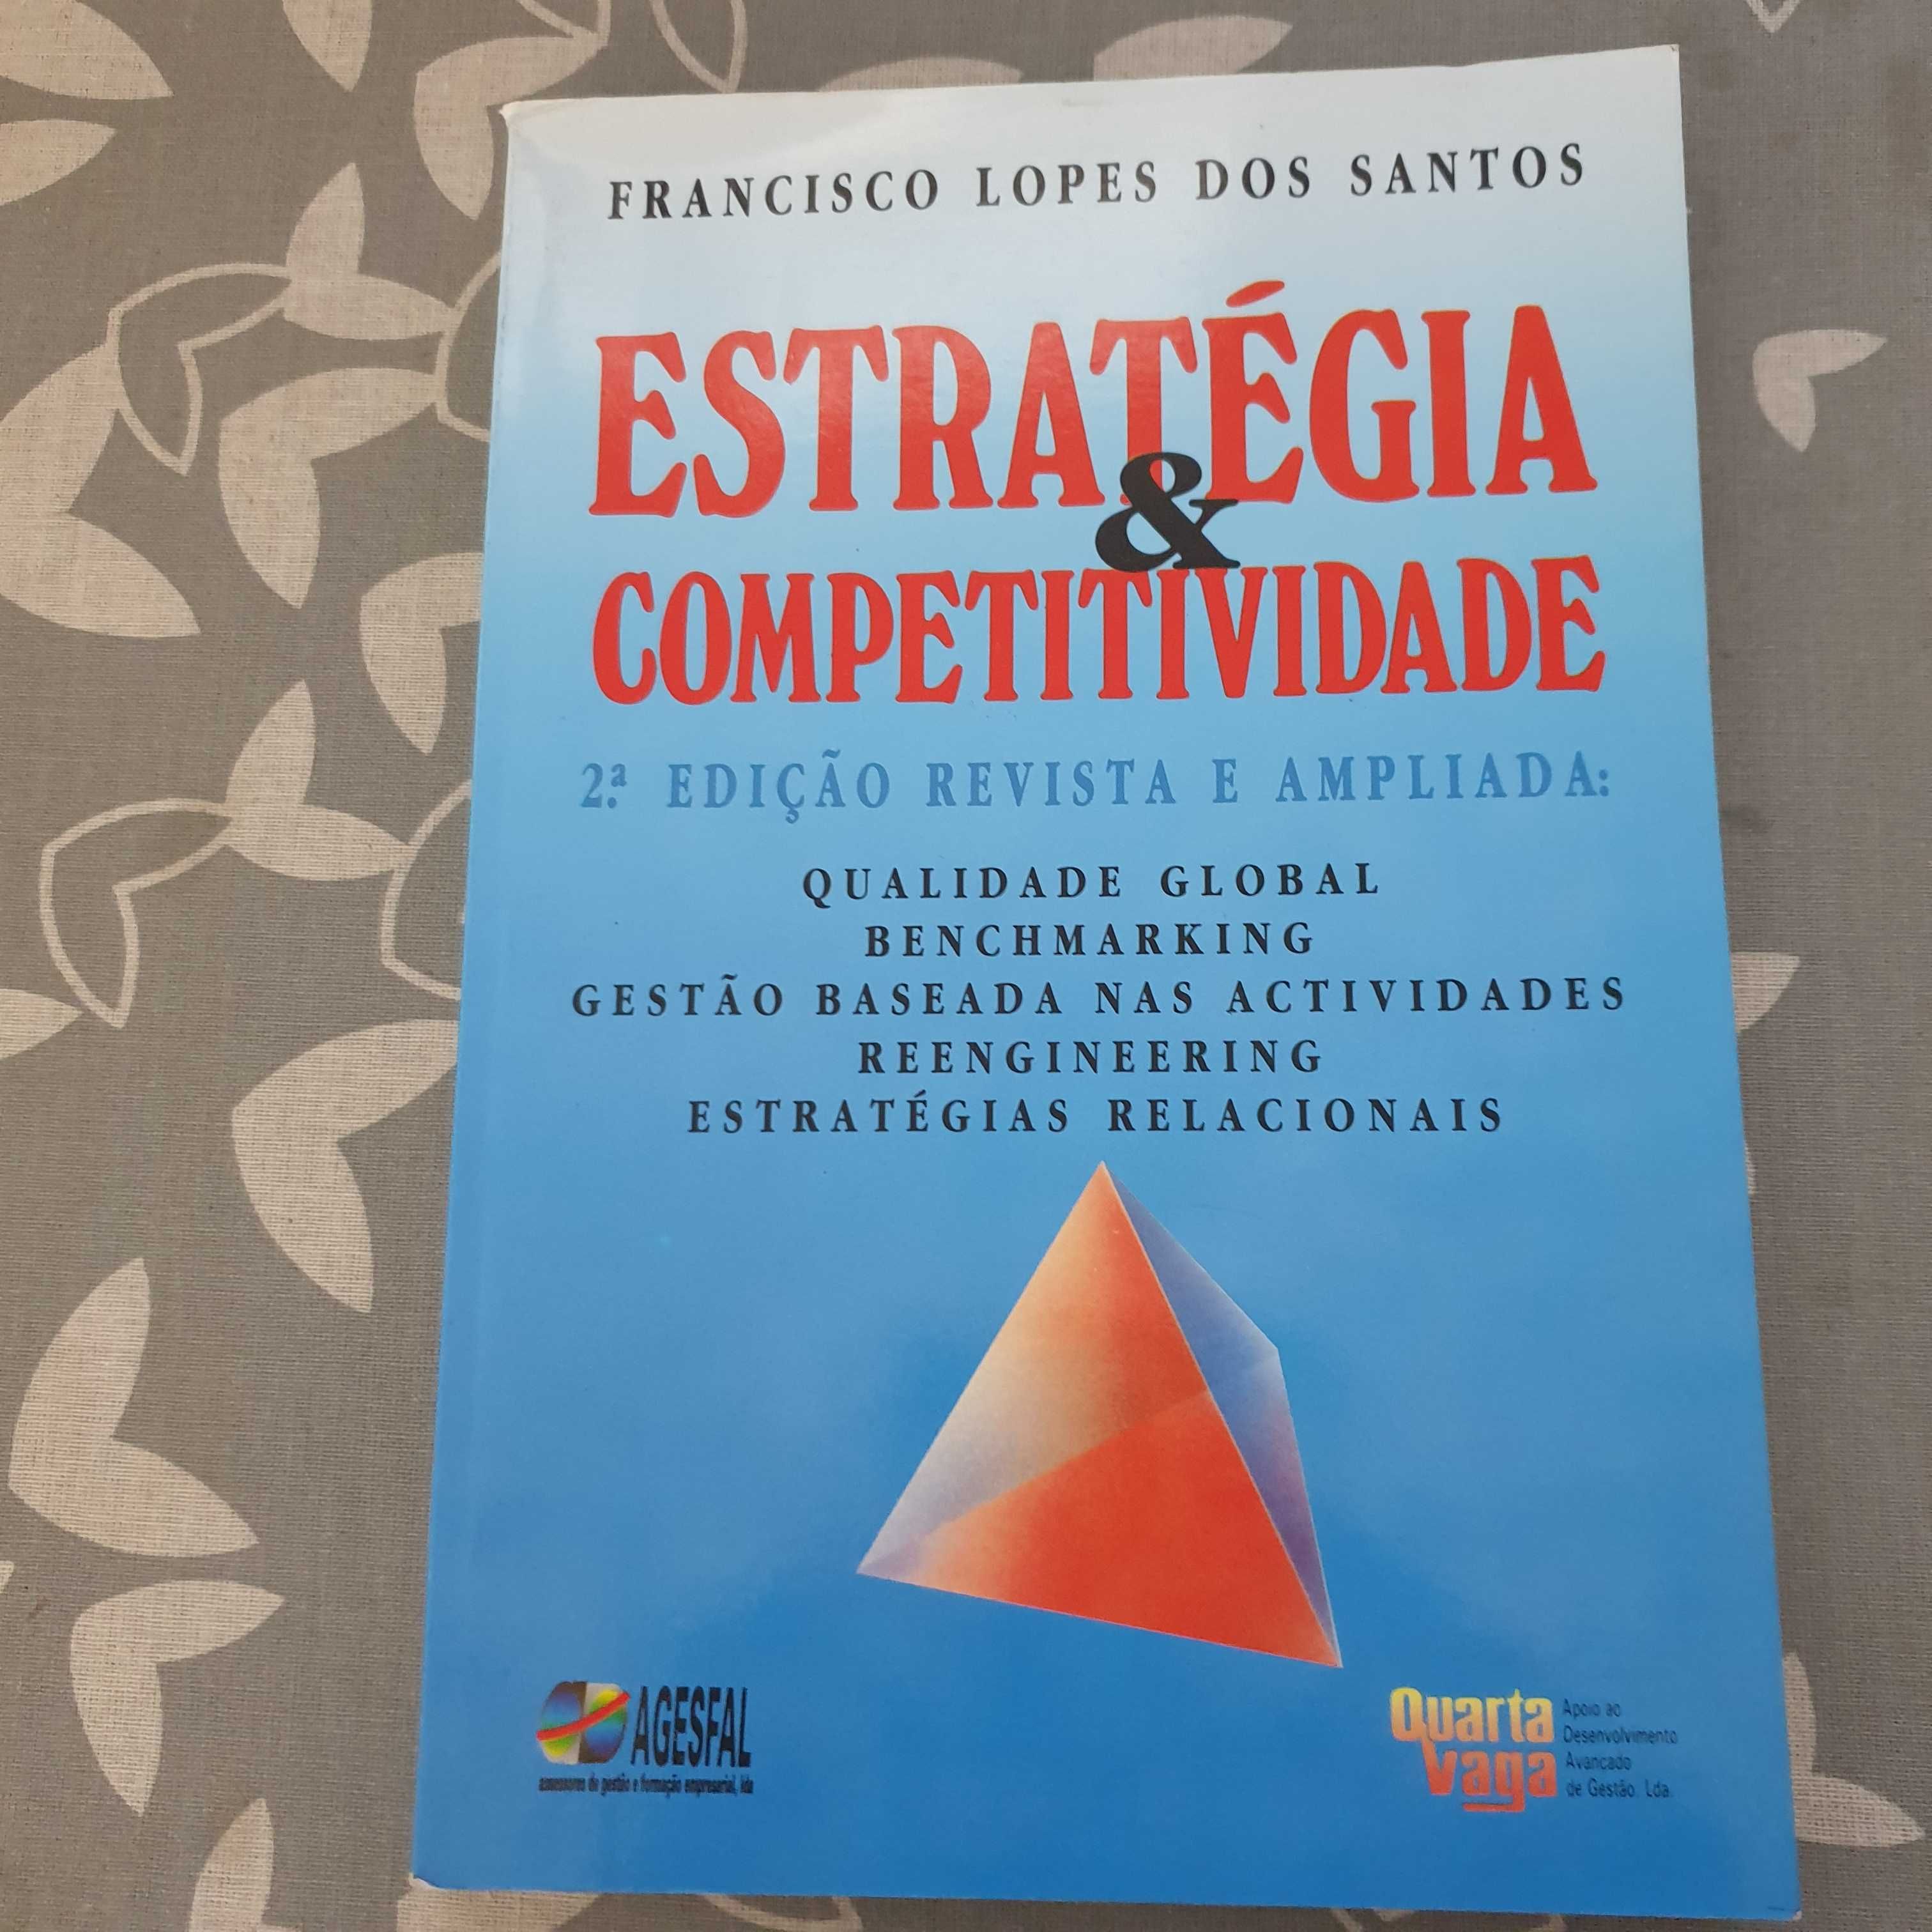 estratégia e competitividade de Francisco Lopes dos Santos